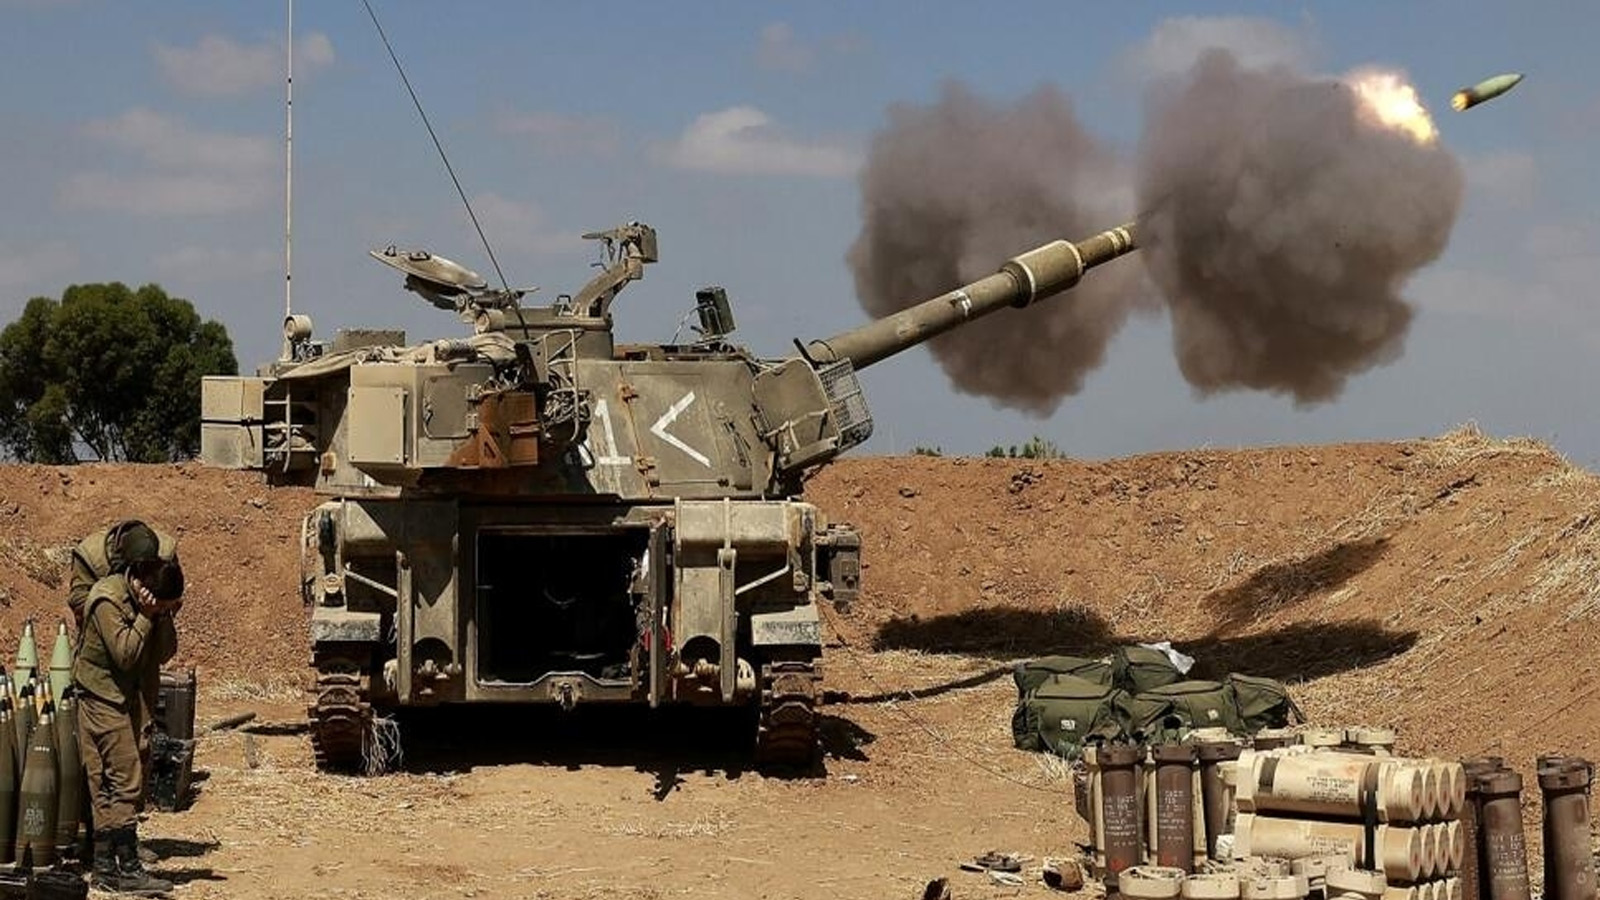 جنود إسرائيليون يطلقون مدفع هاوتزر ذاتي الدفع عيار 155 ملم باتجاه قطاع غزة من موقعهم بالقرب من مدينة سديروت بجنوب إسرائيل في 13 مايو (أيار) 2021